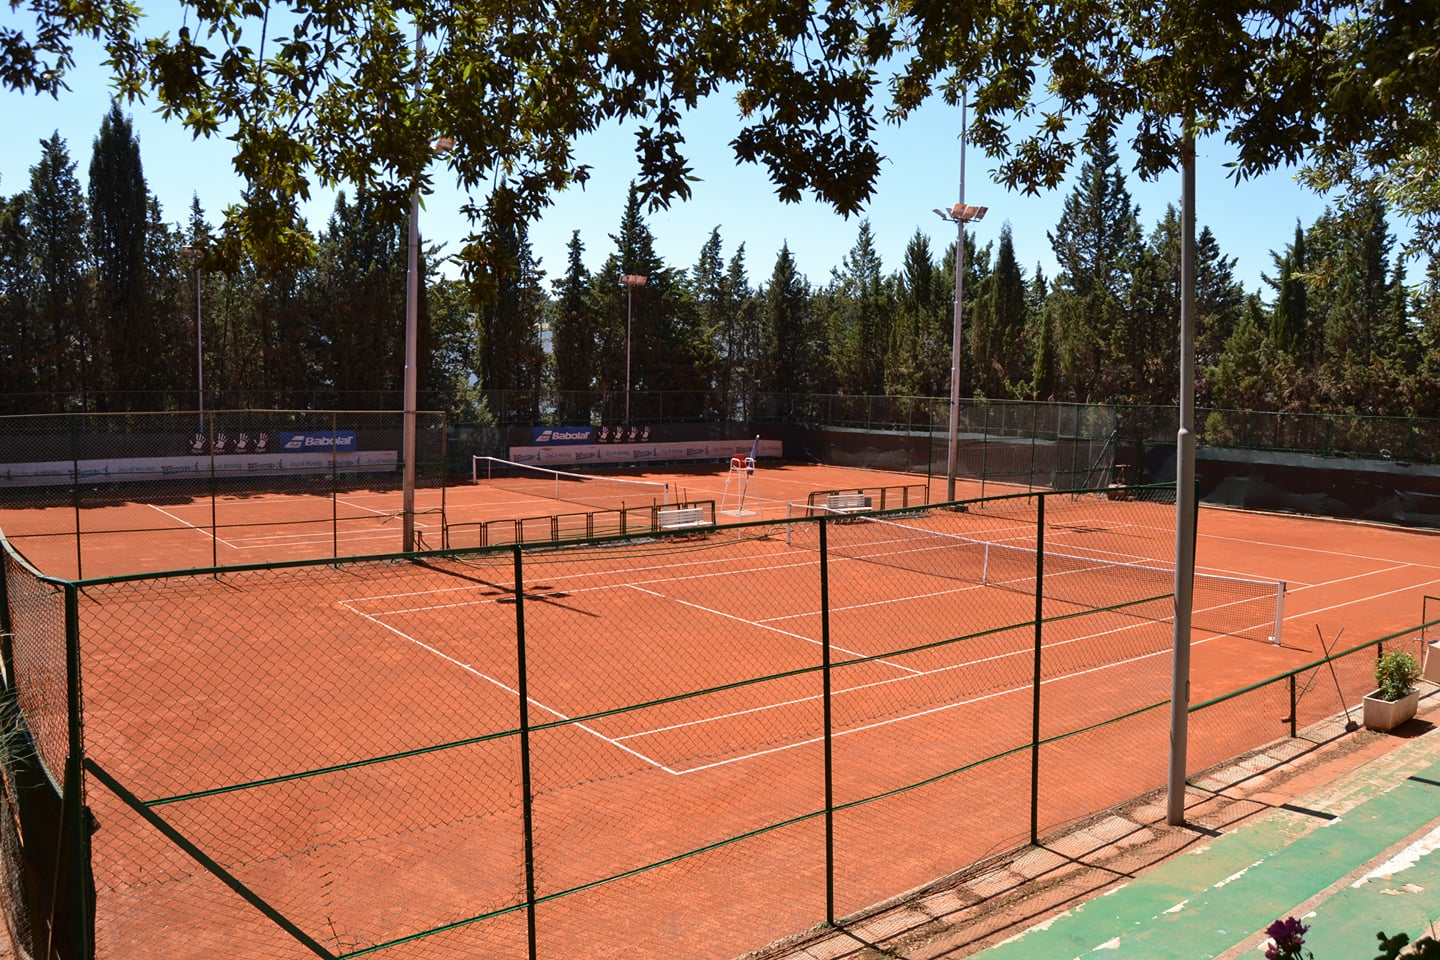 Stati generali del tennis dal 15 al 17 gennaio presso il Circolo di Matera, disponibile per gli ospiti il parcheggio pubblico di via Saragat